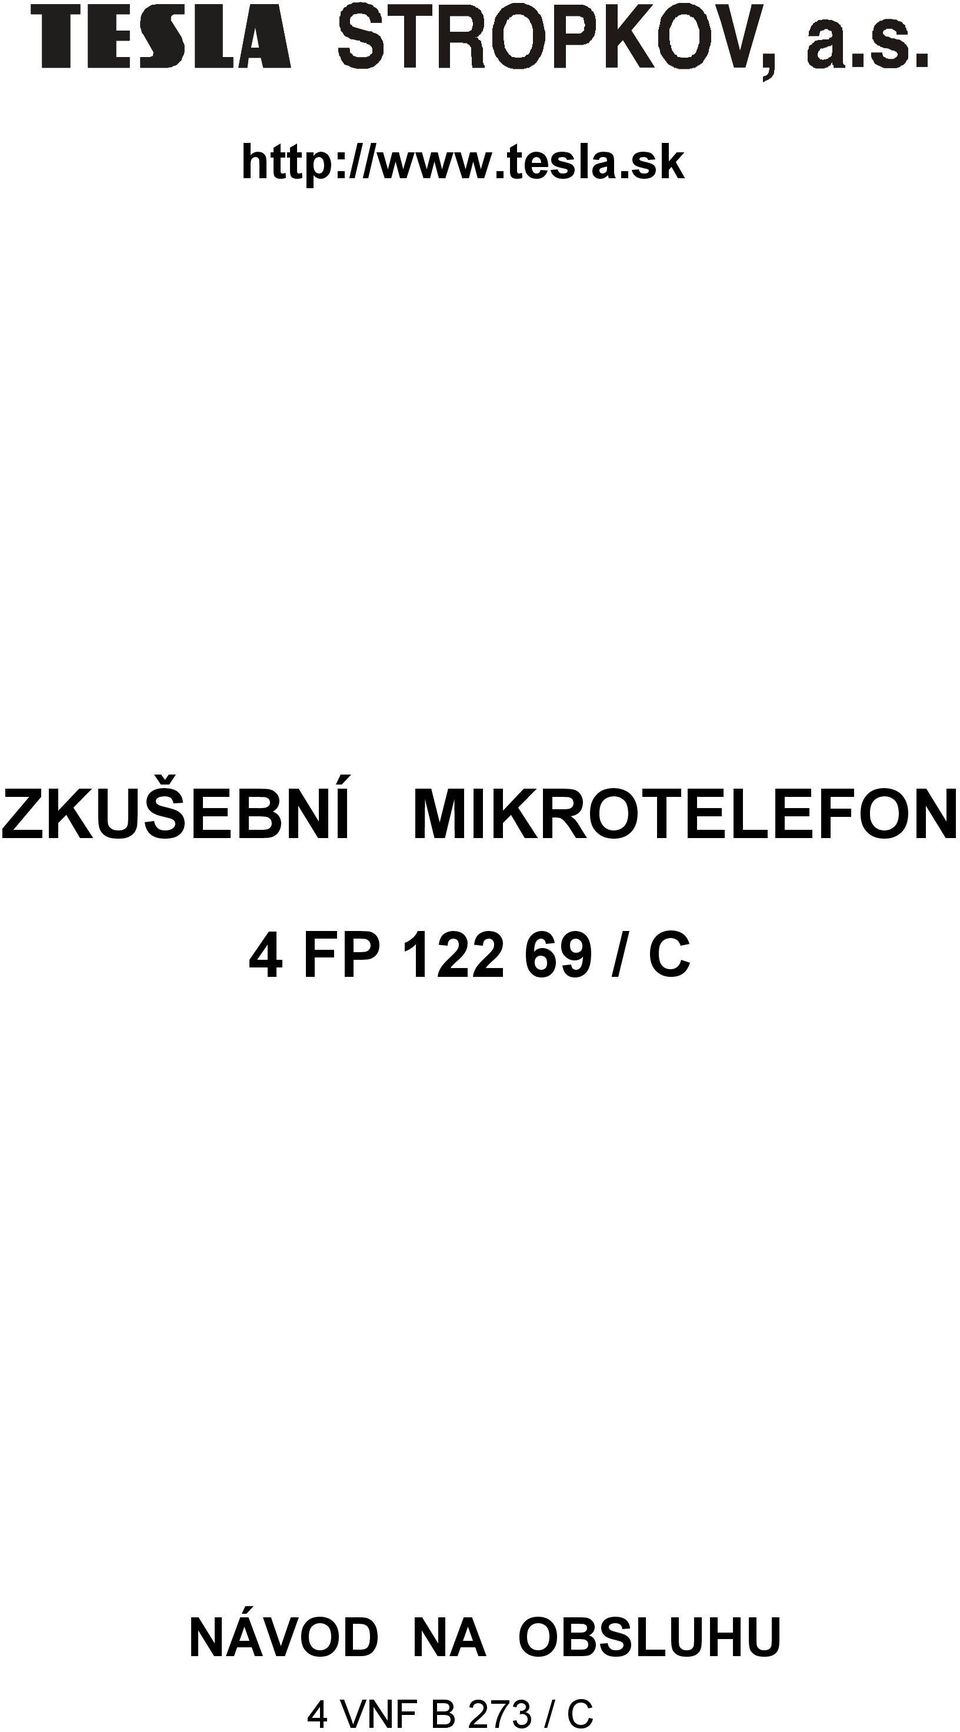 MIKROTELEFON 4 FP 122